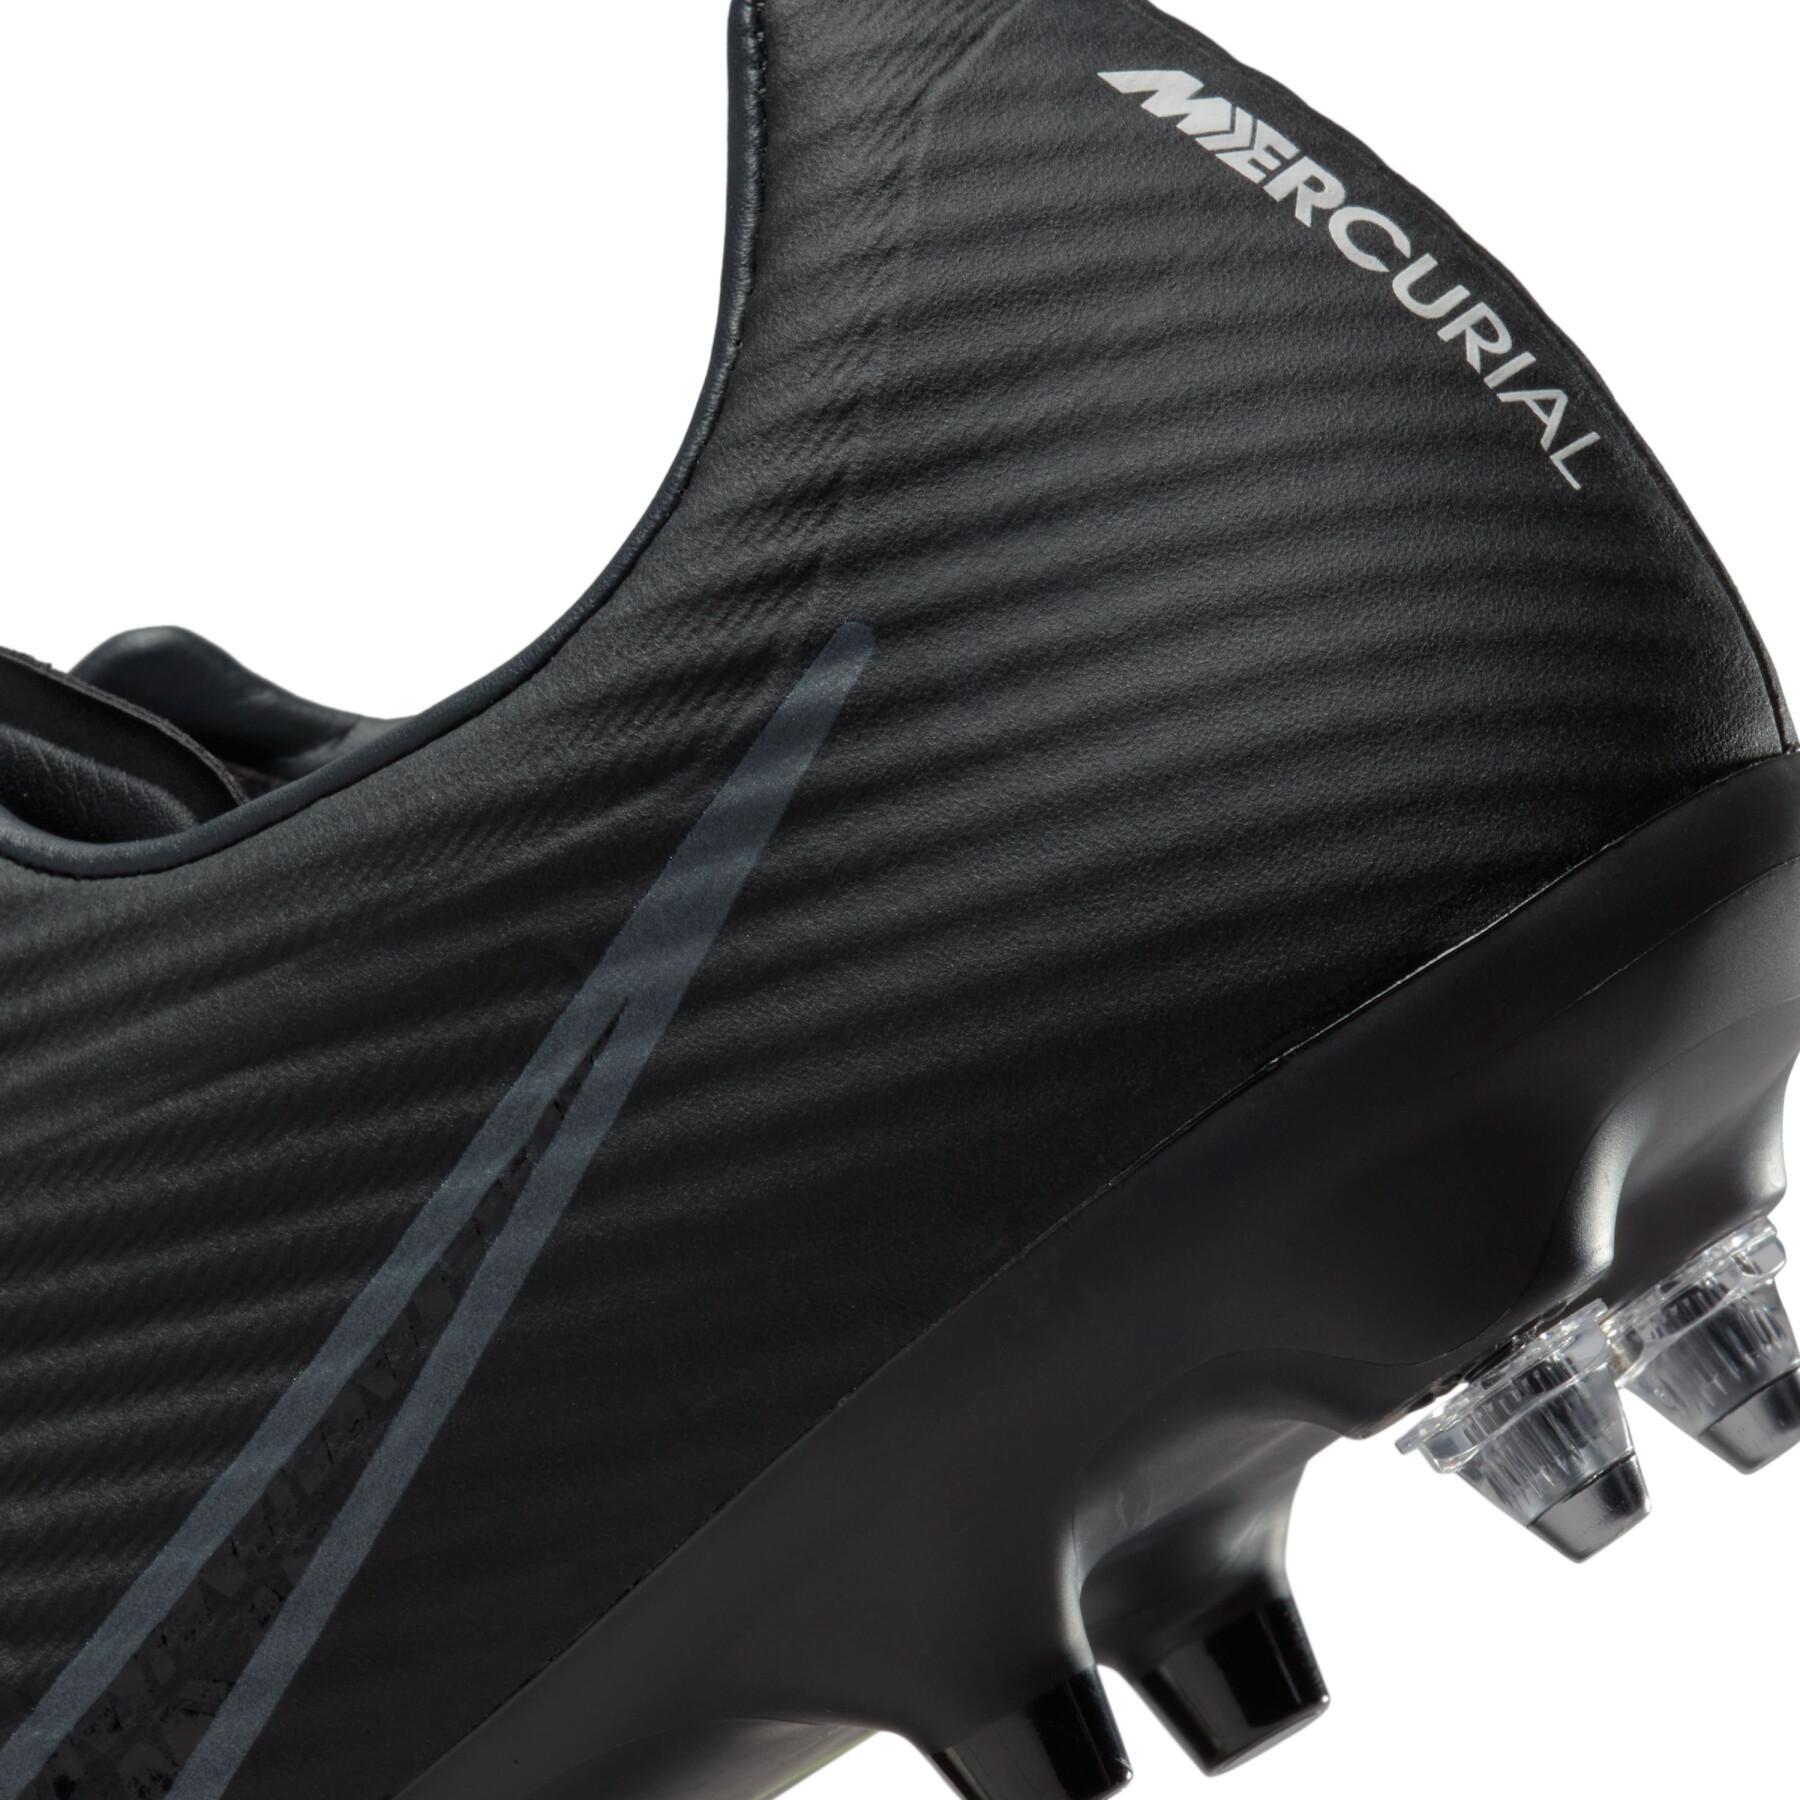 Sapatos de futebol Nike Zoom Mercurial Vapor 15 Academy SG-Pro - Shadow Black Pack